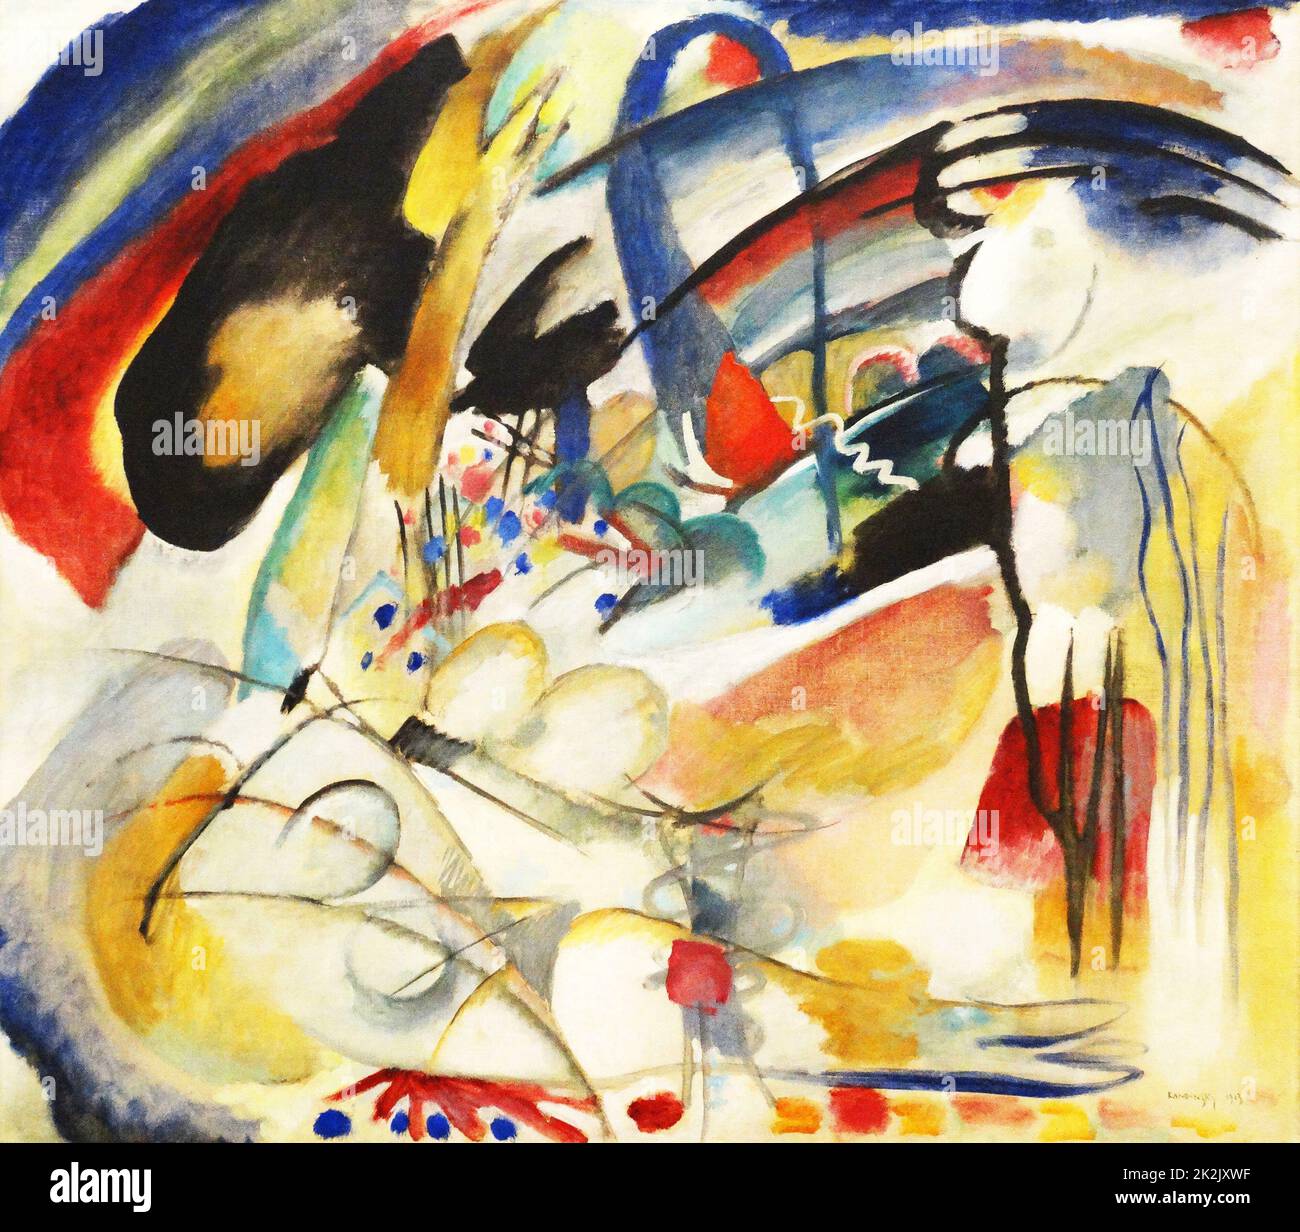 Improvvisazione 33 (Oriente 1) (olio su tela, 88 x 100 cm) di Wassily Kandinsky (1866-1944) un influente pittore e teorico russo. Gli viene accreditato di dipingere le prime opere puramente astratte. Foto Stock